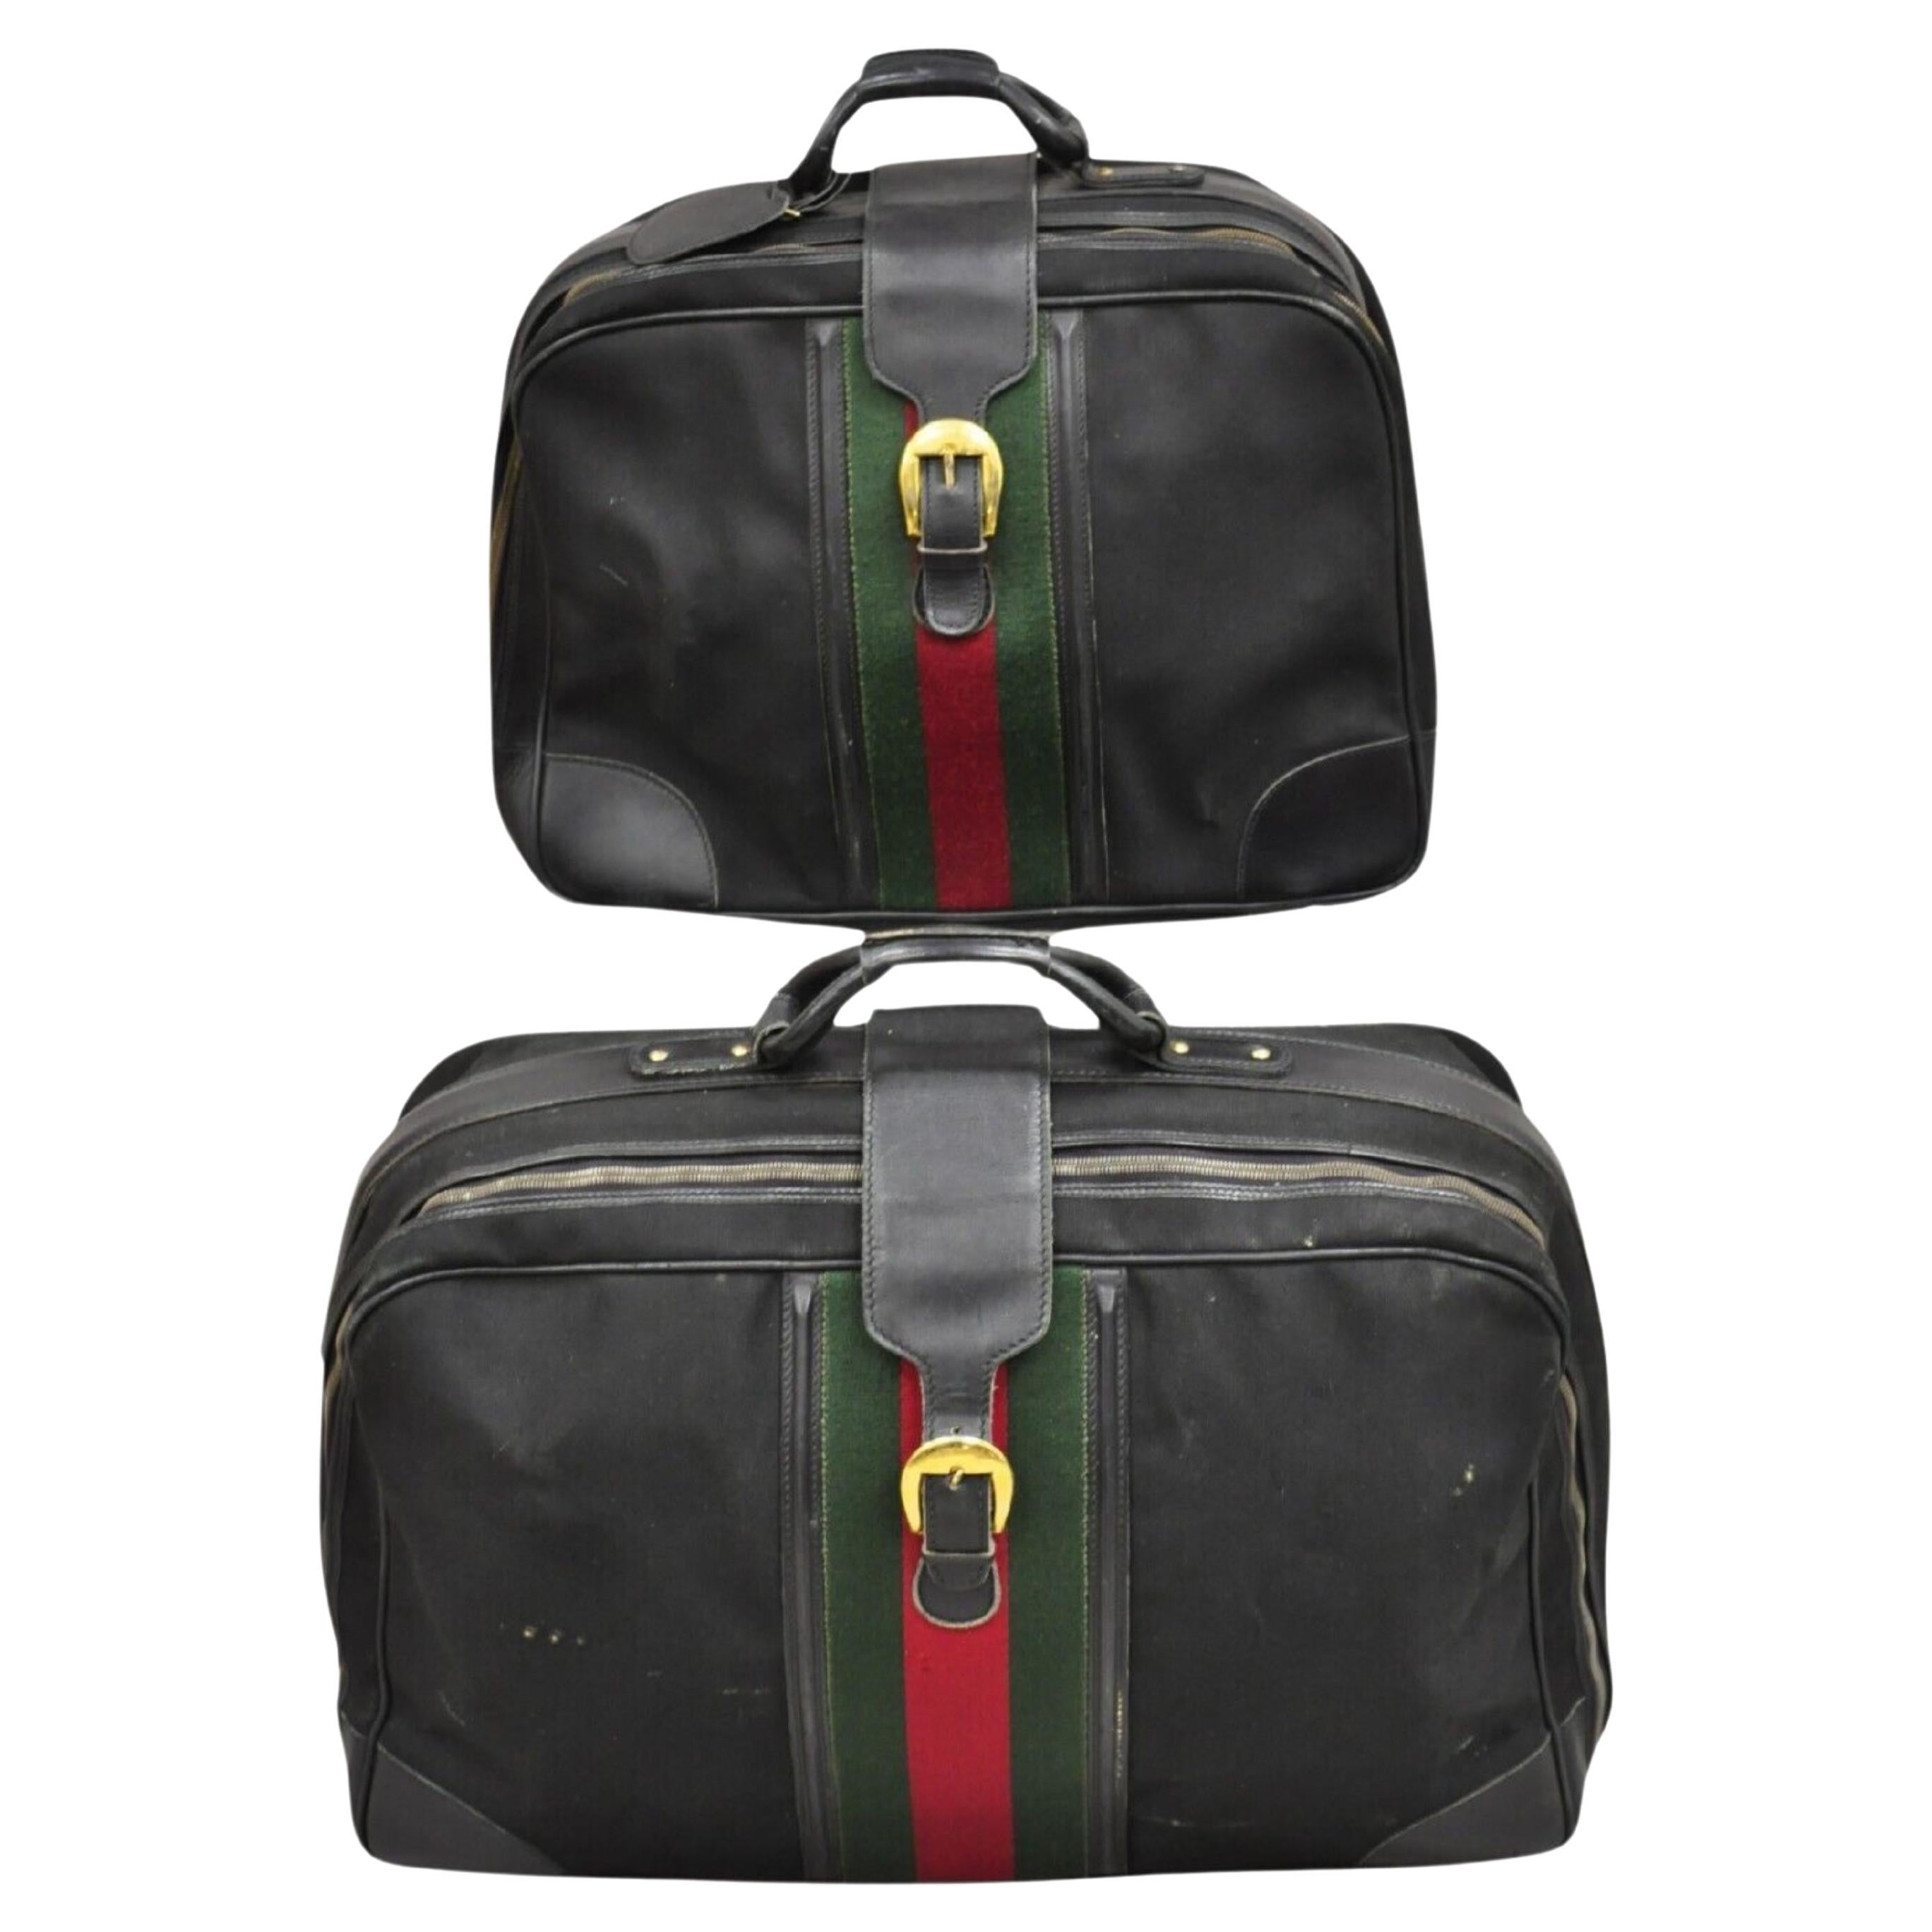 Vintage Gucci Black Canvas & Leather Suitcase Luggage Travel Bag Set - 2 Pcs